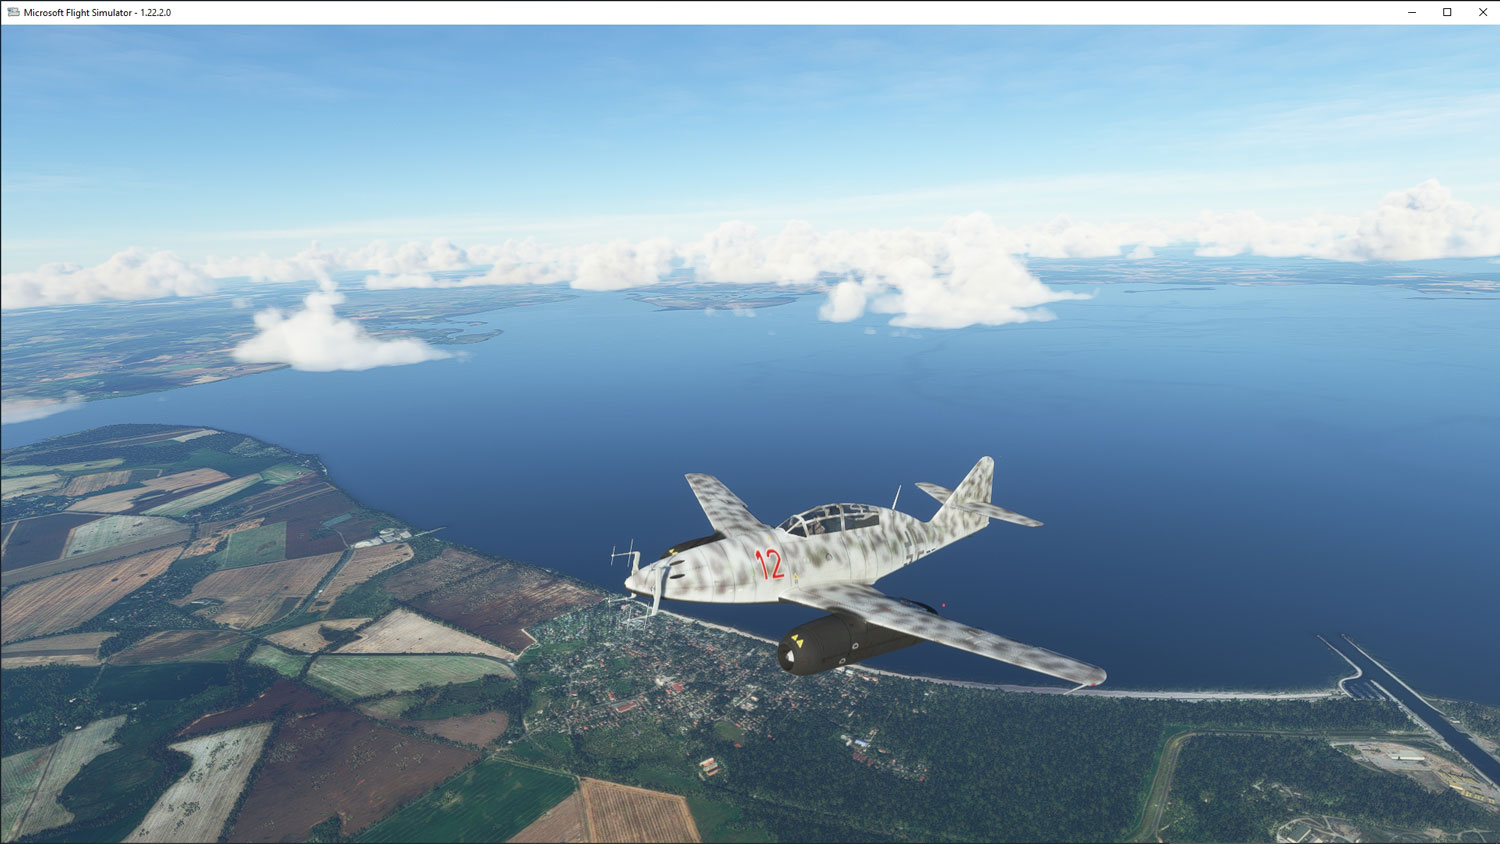 Romantic Wings - Luftwaffe Jet Age MSFS